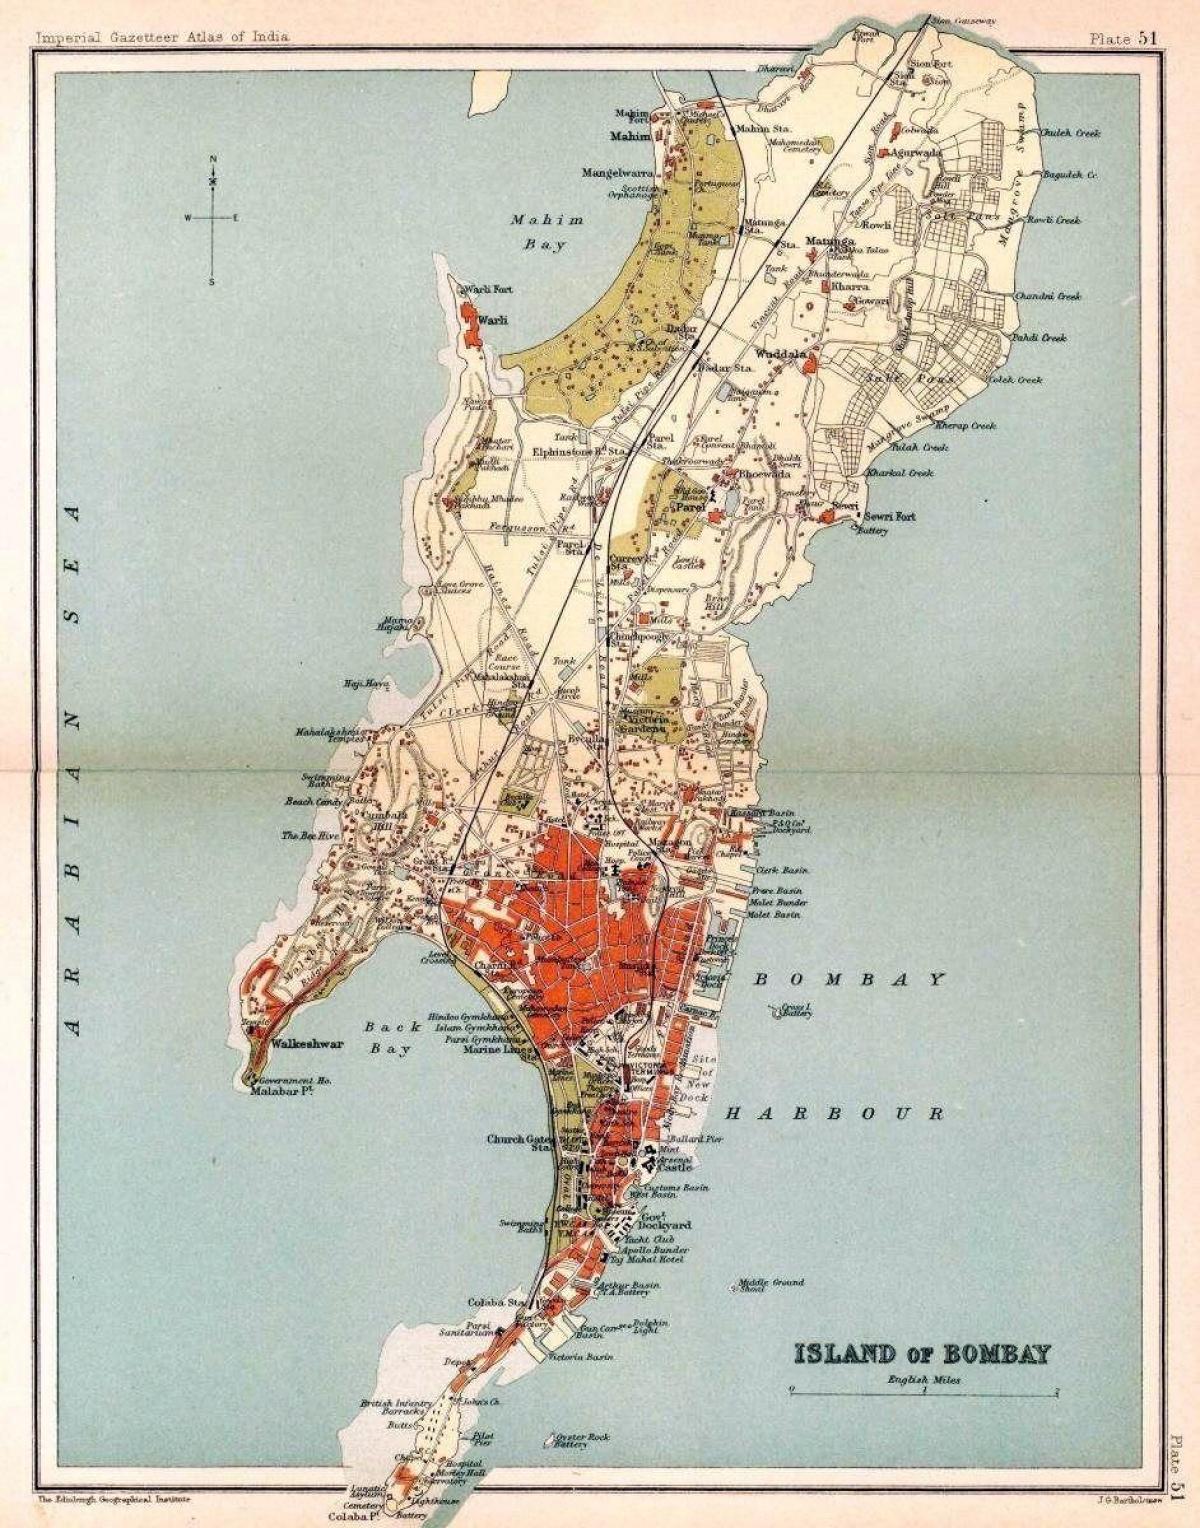 Mumbai - Bombay historische kaart